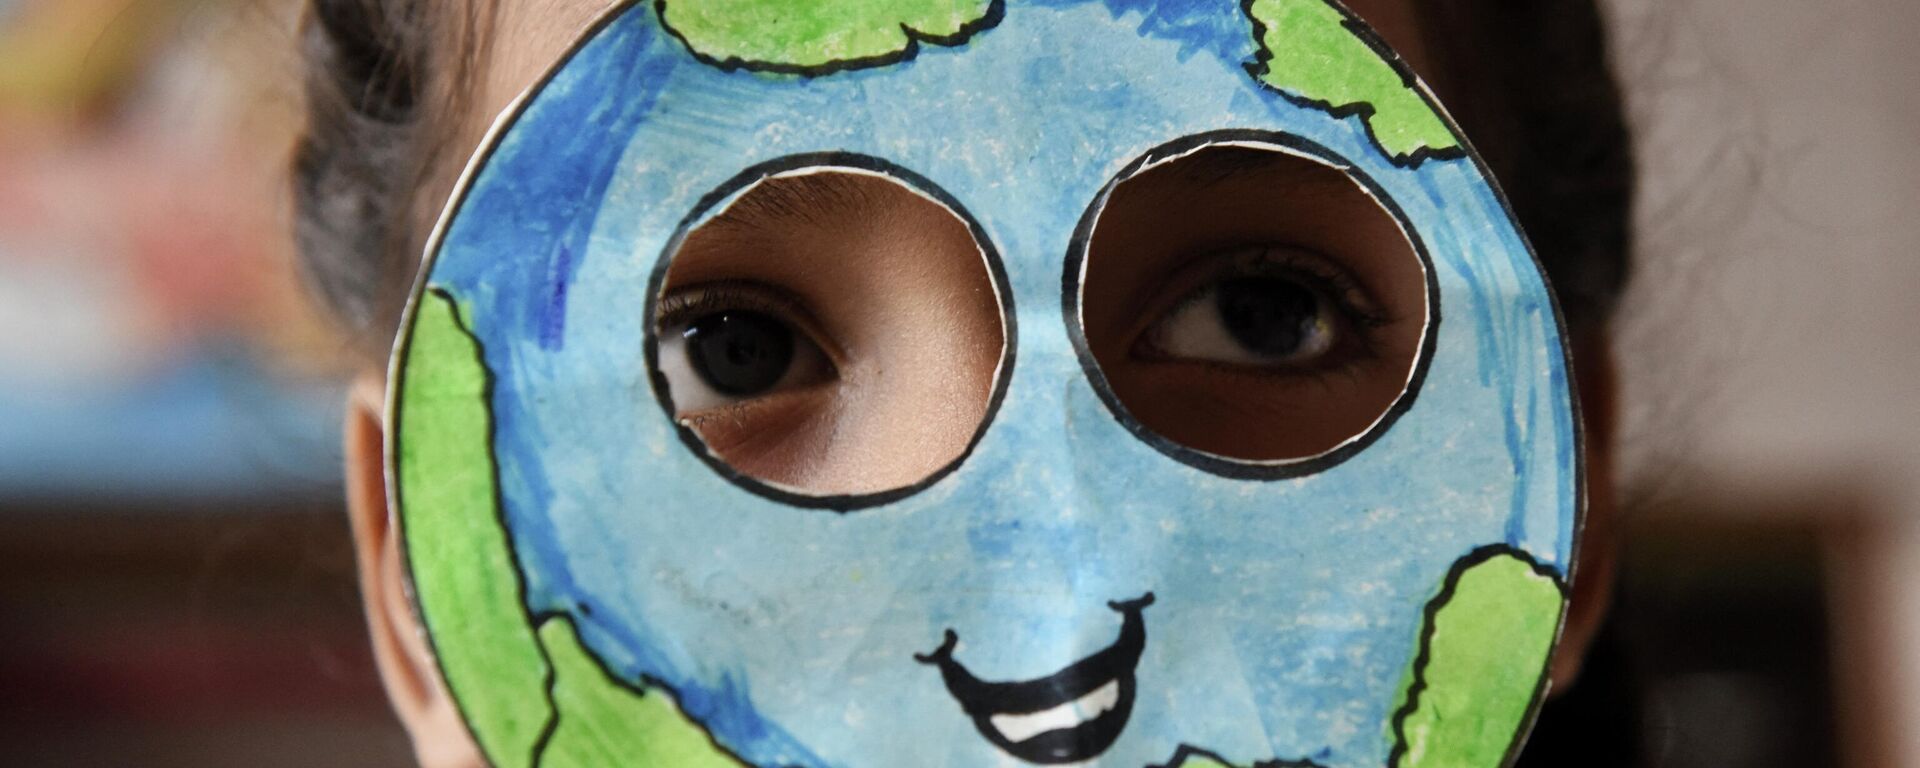 Ученик надевает маску, сделанную в форме планеты Земля, во время мероприятия по случаю Дня Земли в школе в Амритсаре, Индия - Sputnik Латвия, 1920, 03.08.2022